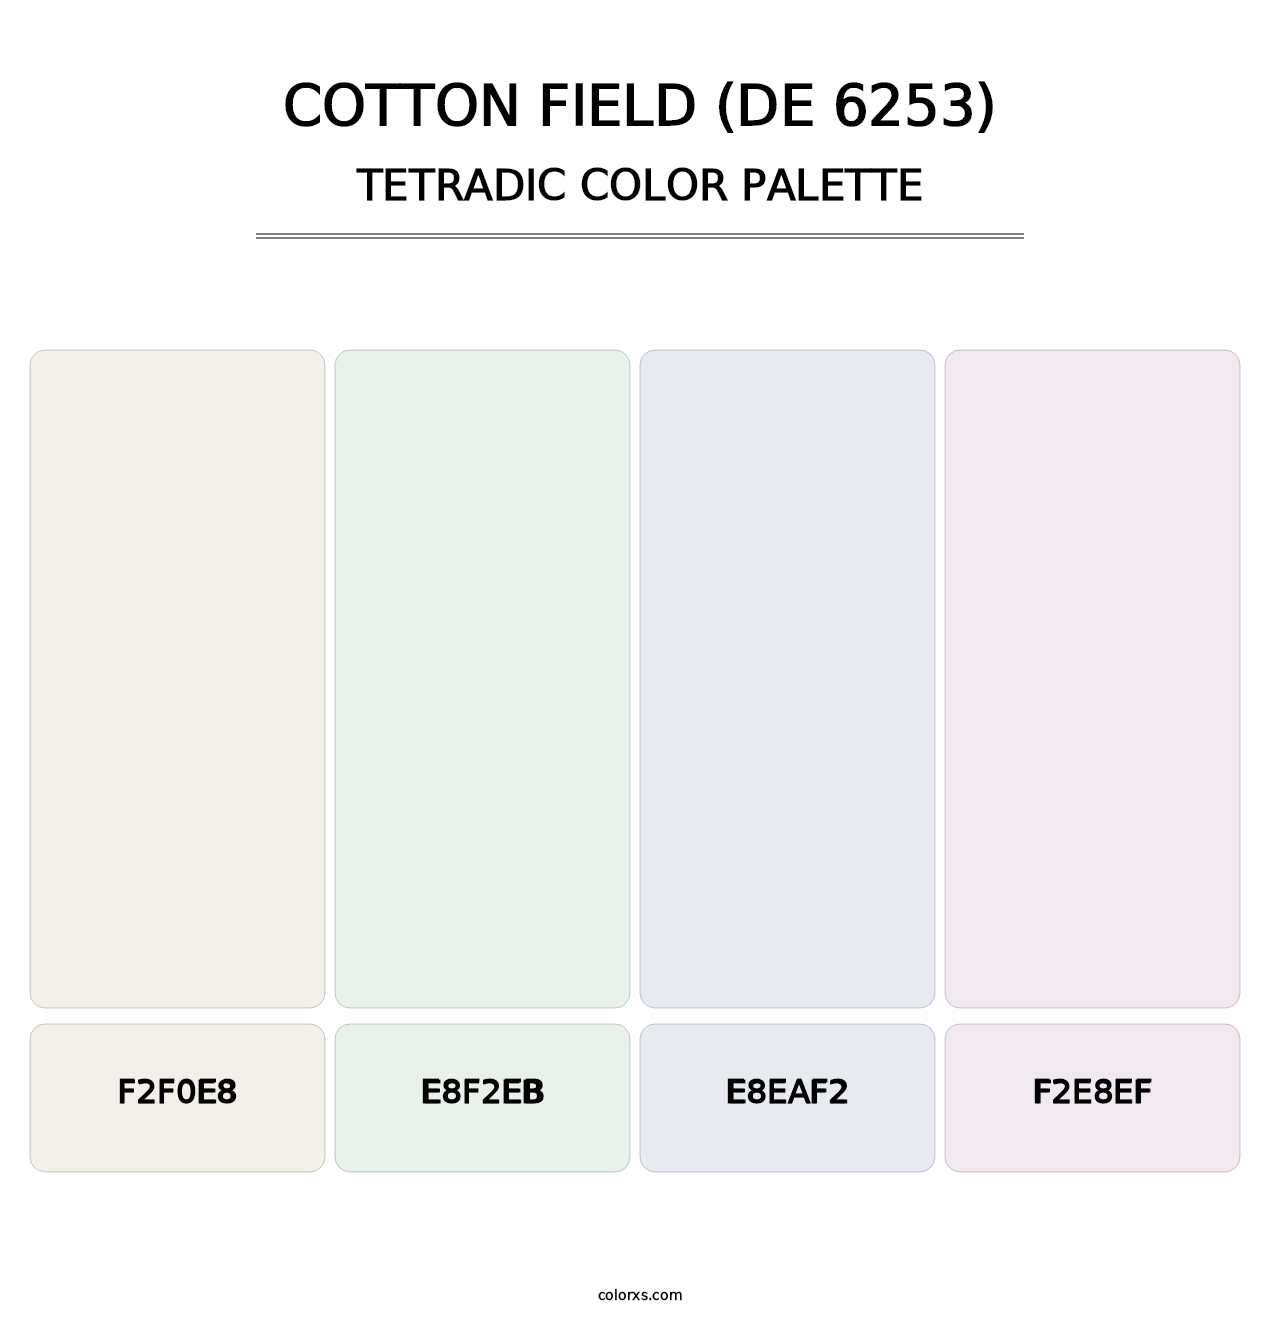 Cotton Field (DE 6253) - Tetradic Color Palette